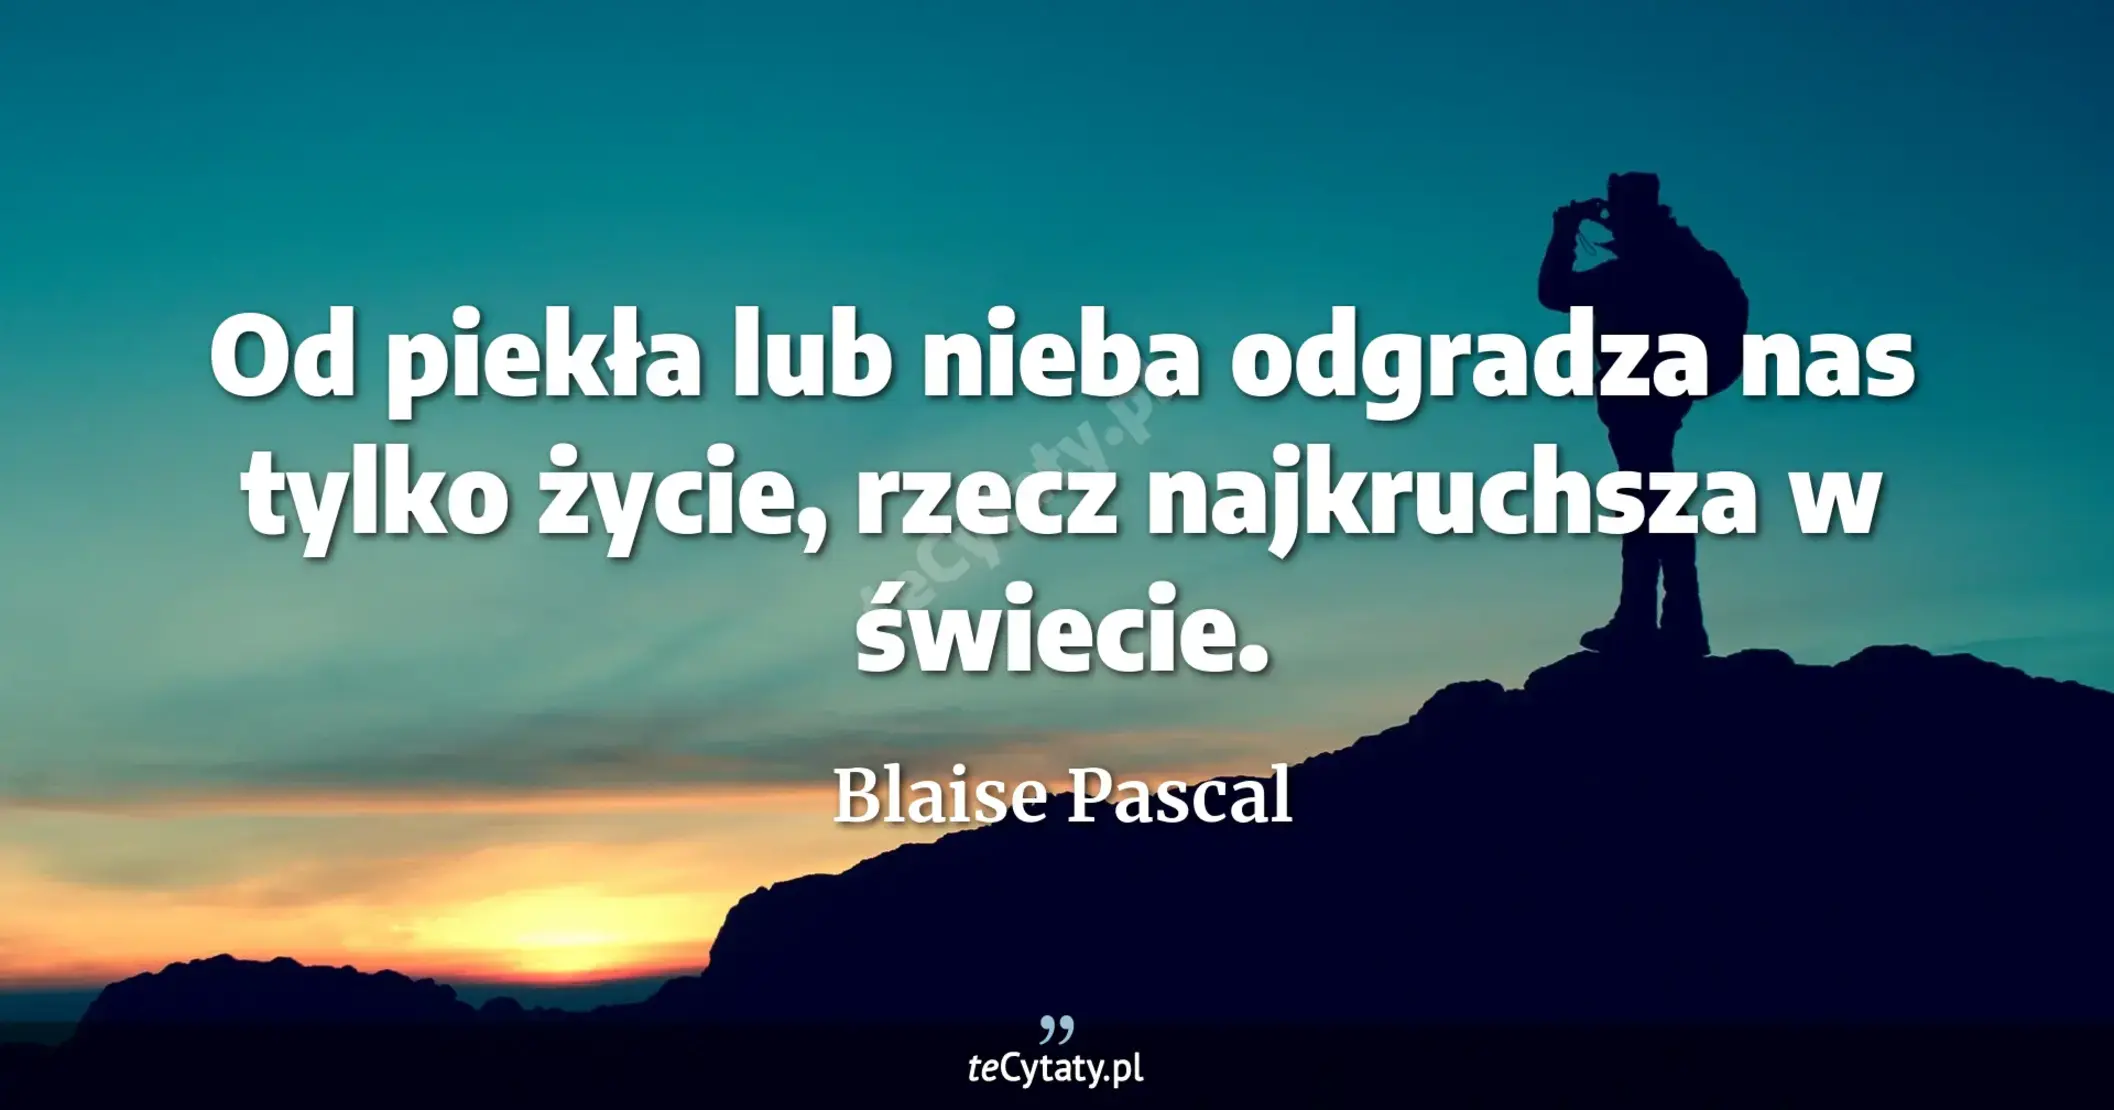 Od piekła lub nieba odgradza nas tylko życie, rzecz najkruchsza w świecie. - Blaise Pascal